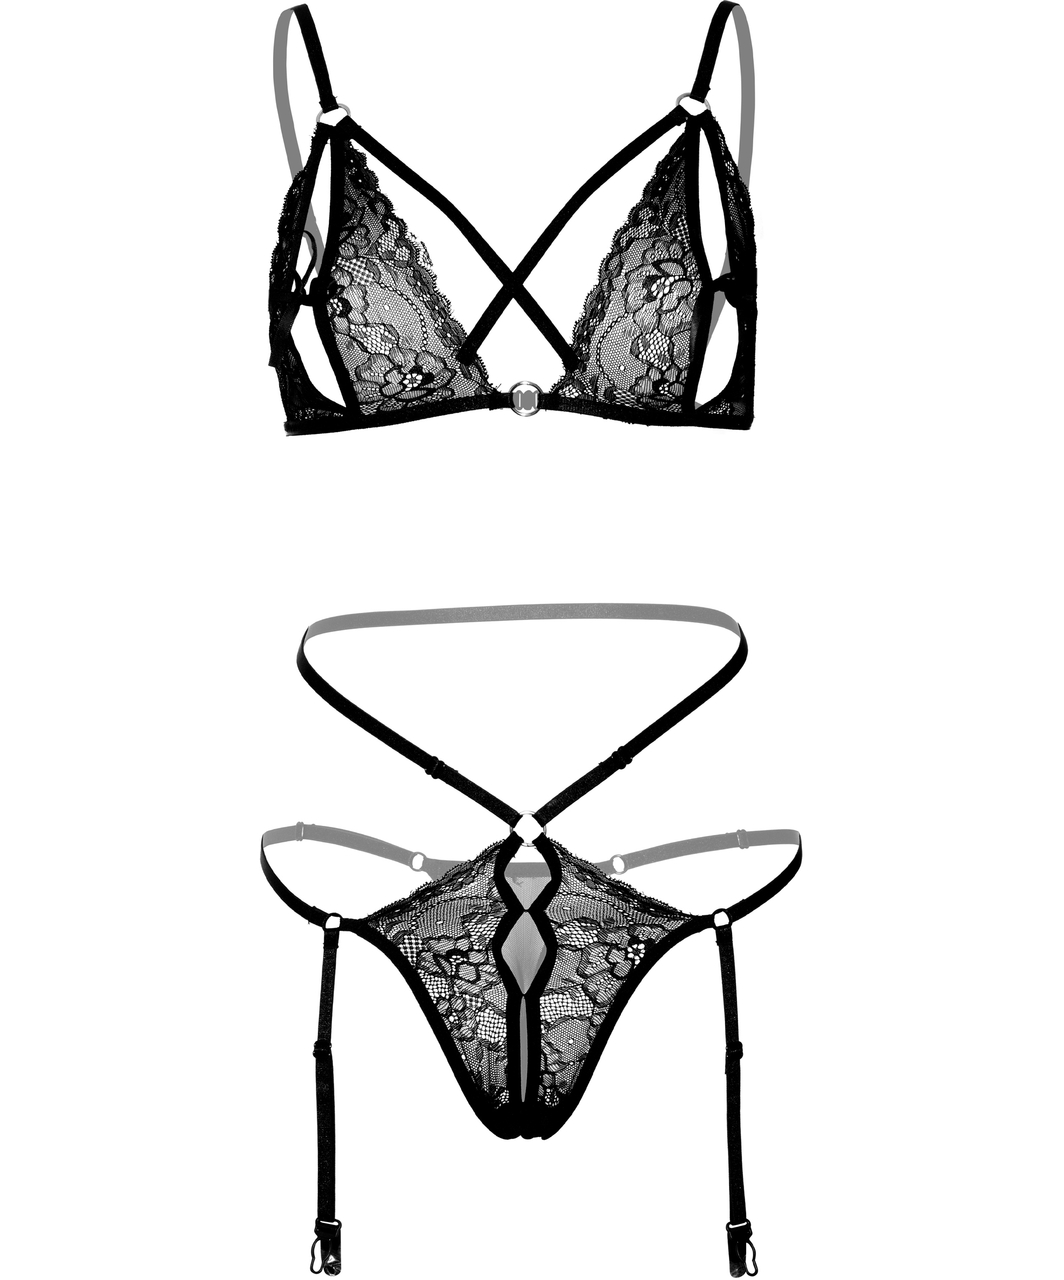 Daring Intimates black lace suspender lingerie set